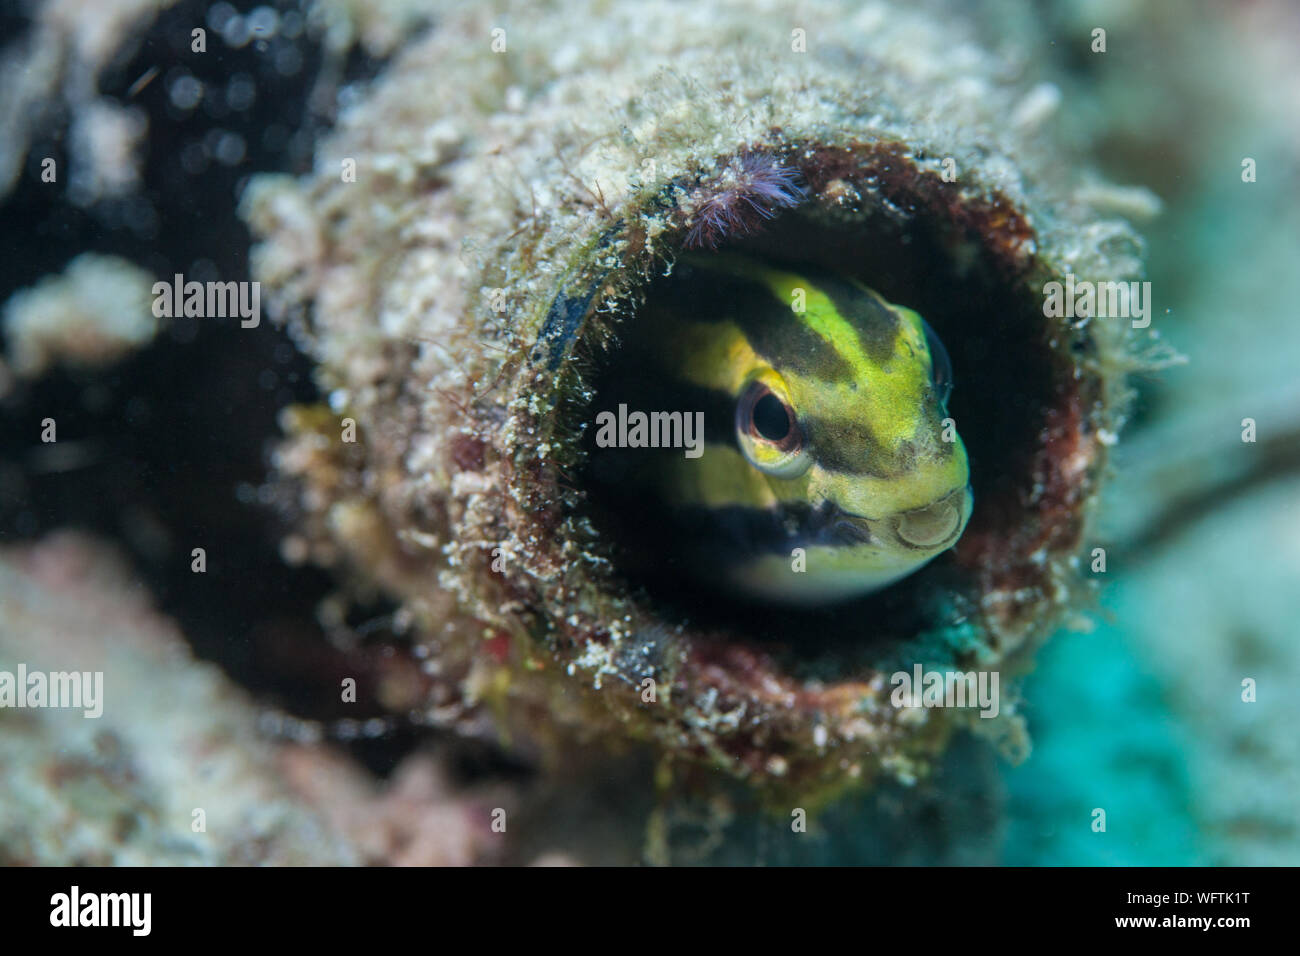 Pesce bocca tubo immagini e fotografie stock ad alta risoluzione - Alamy